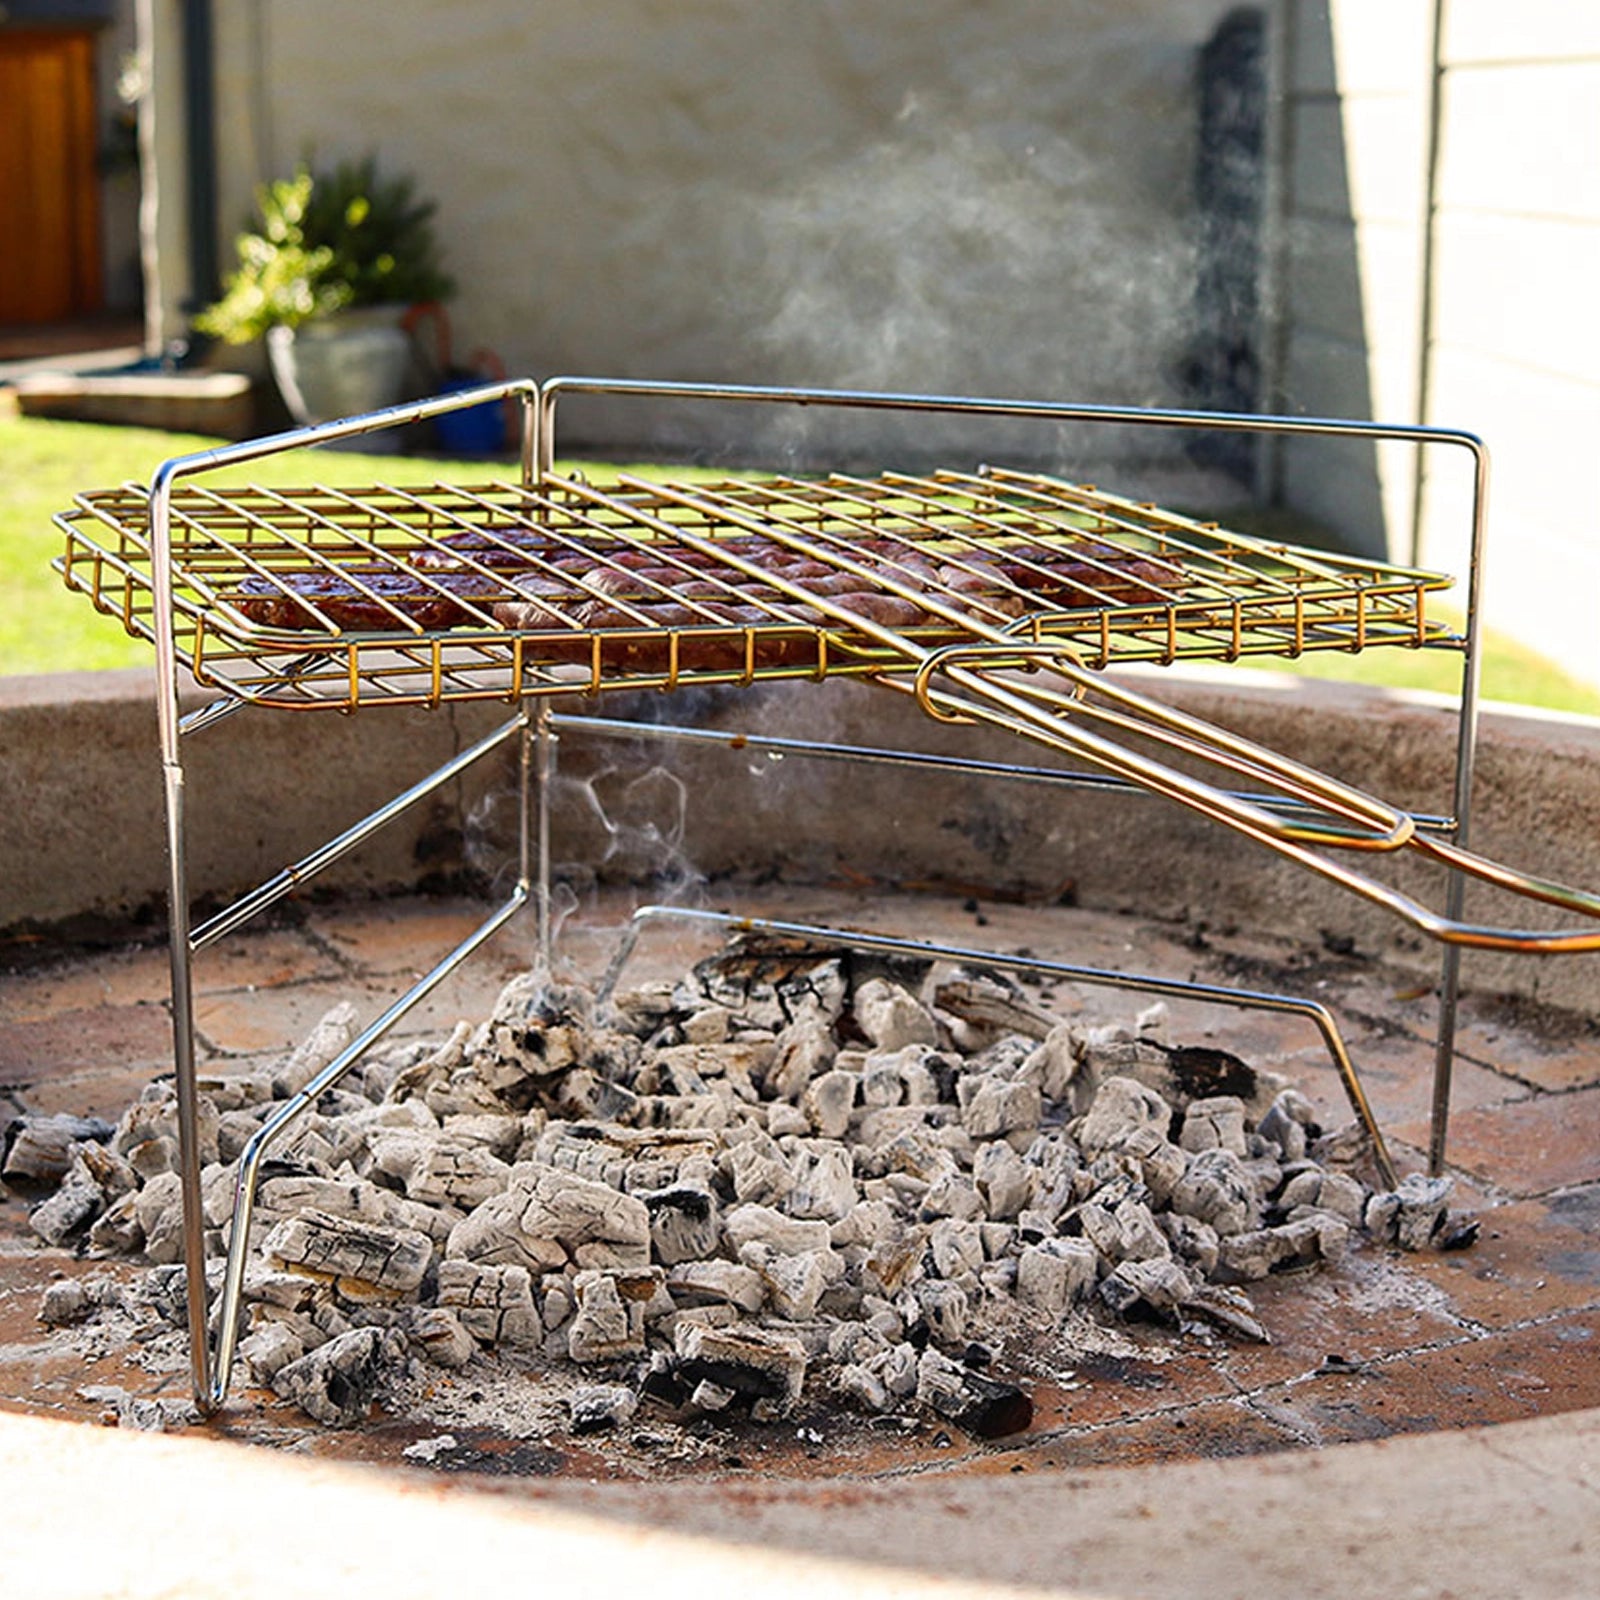 Braai Grid Stand Over hot coals